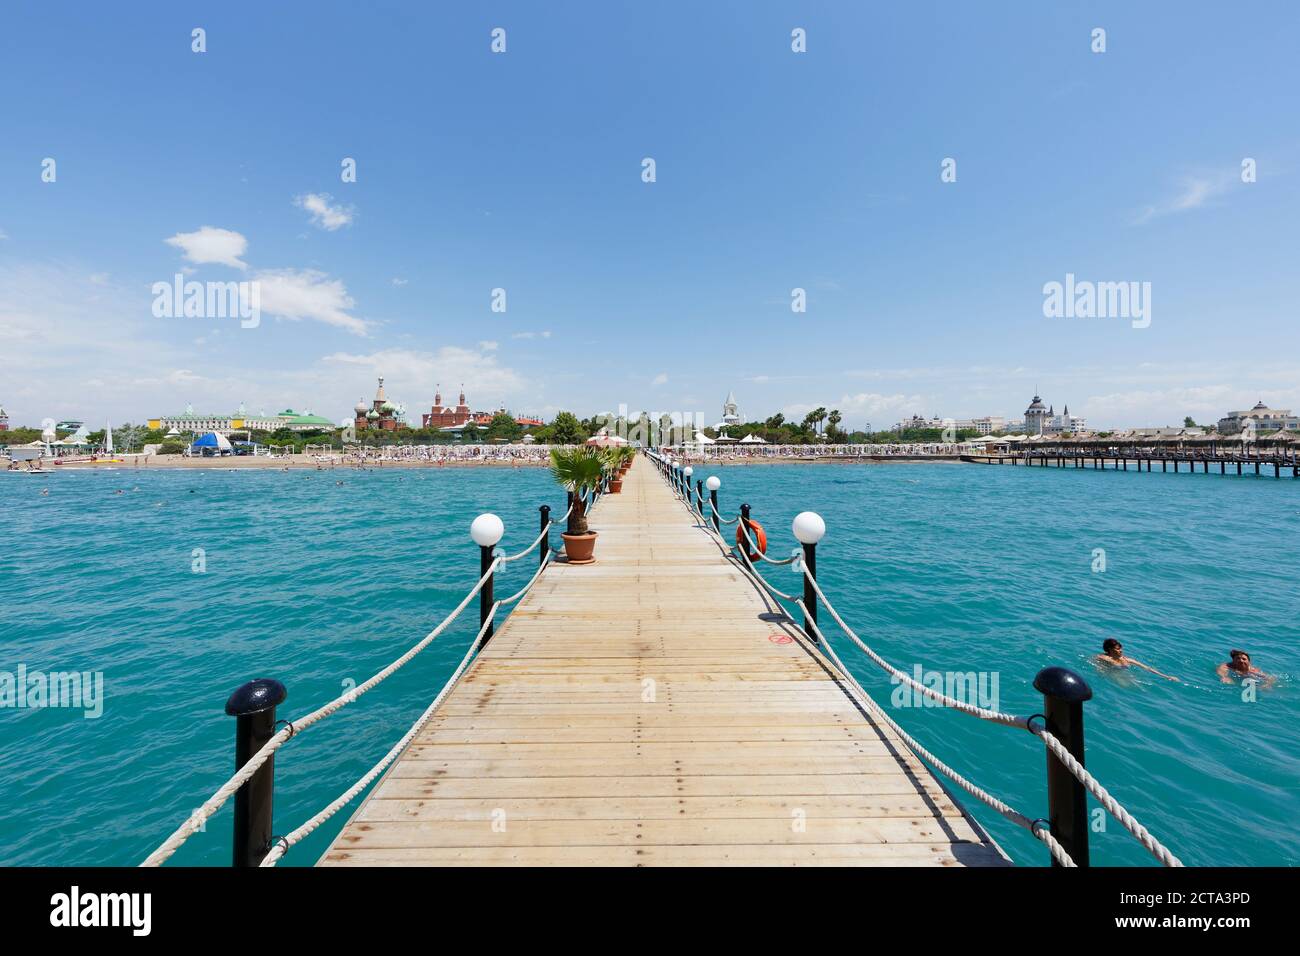 Turkey, Turkish Riviera, Antalya, Kundu, bathing jetty and Hotels Kremlin Palace, Topkapi Palace and Mardan Palace Stock Photo